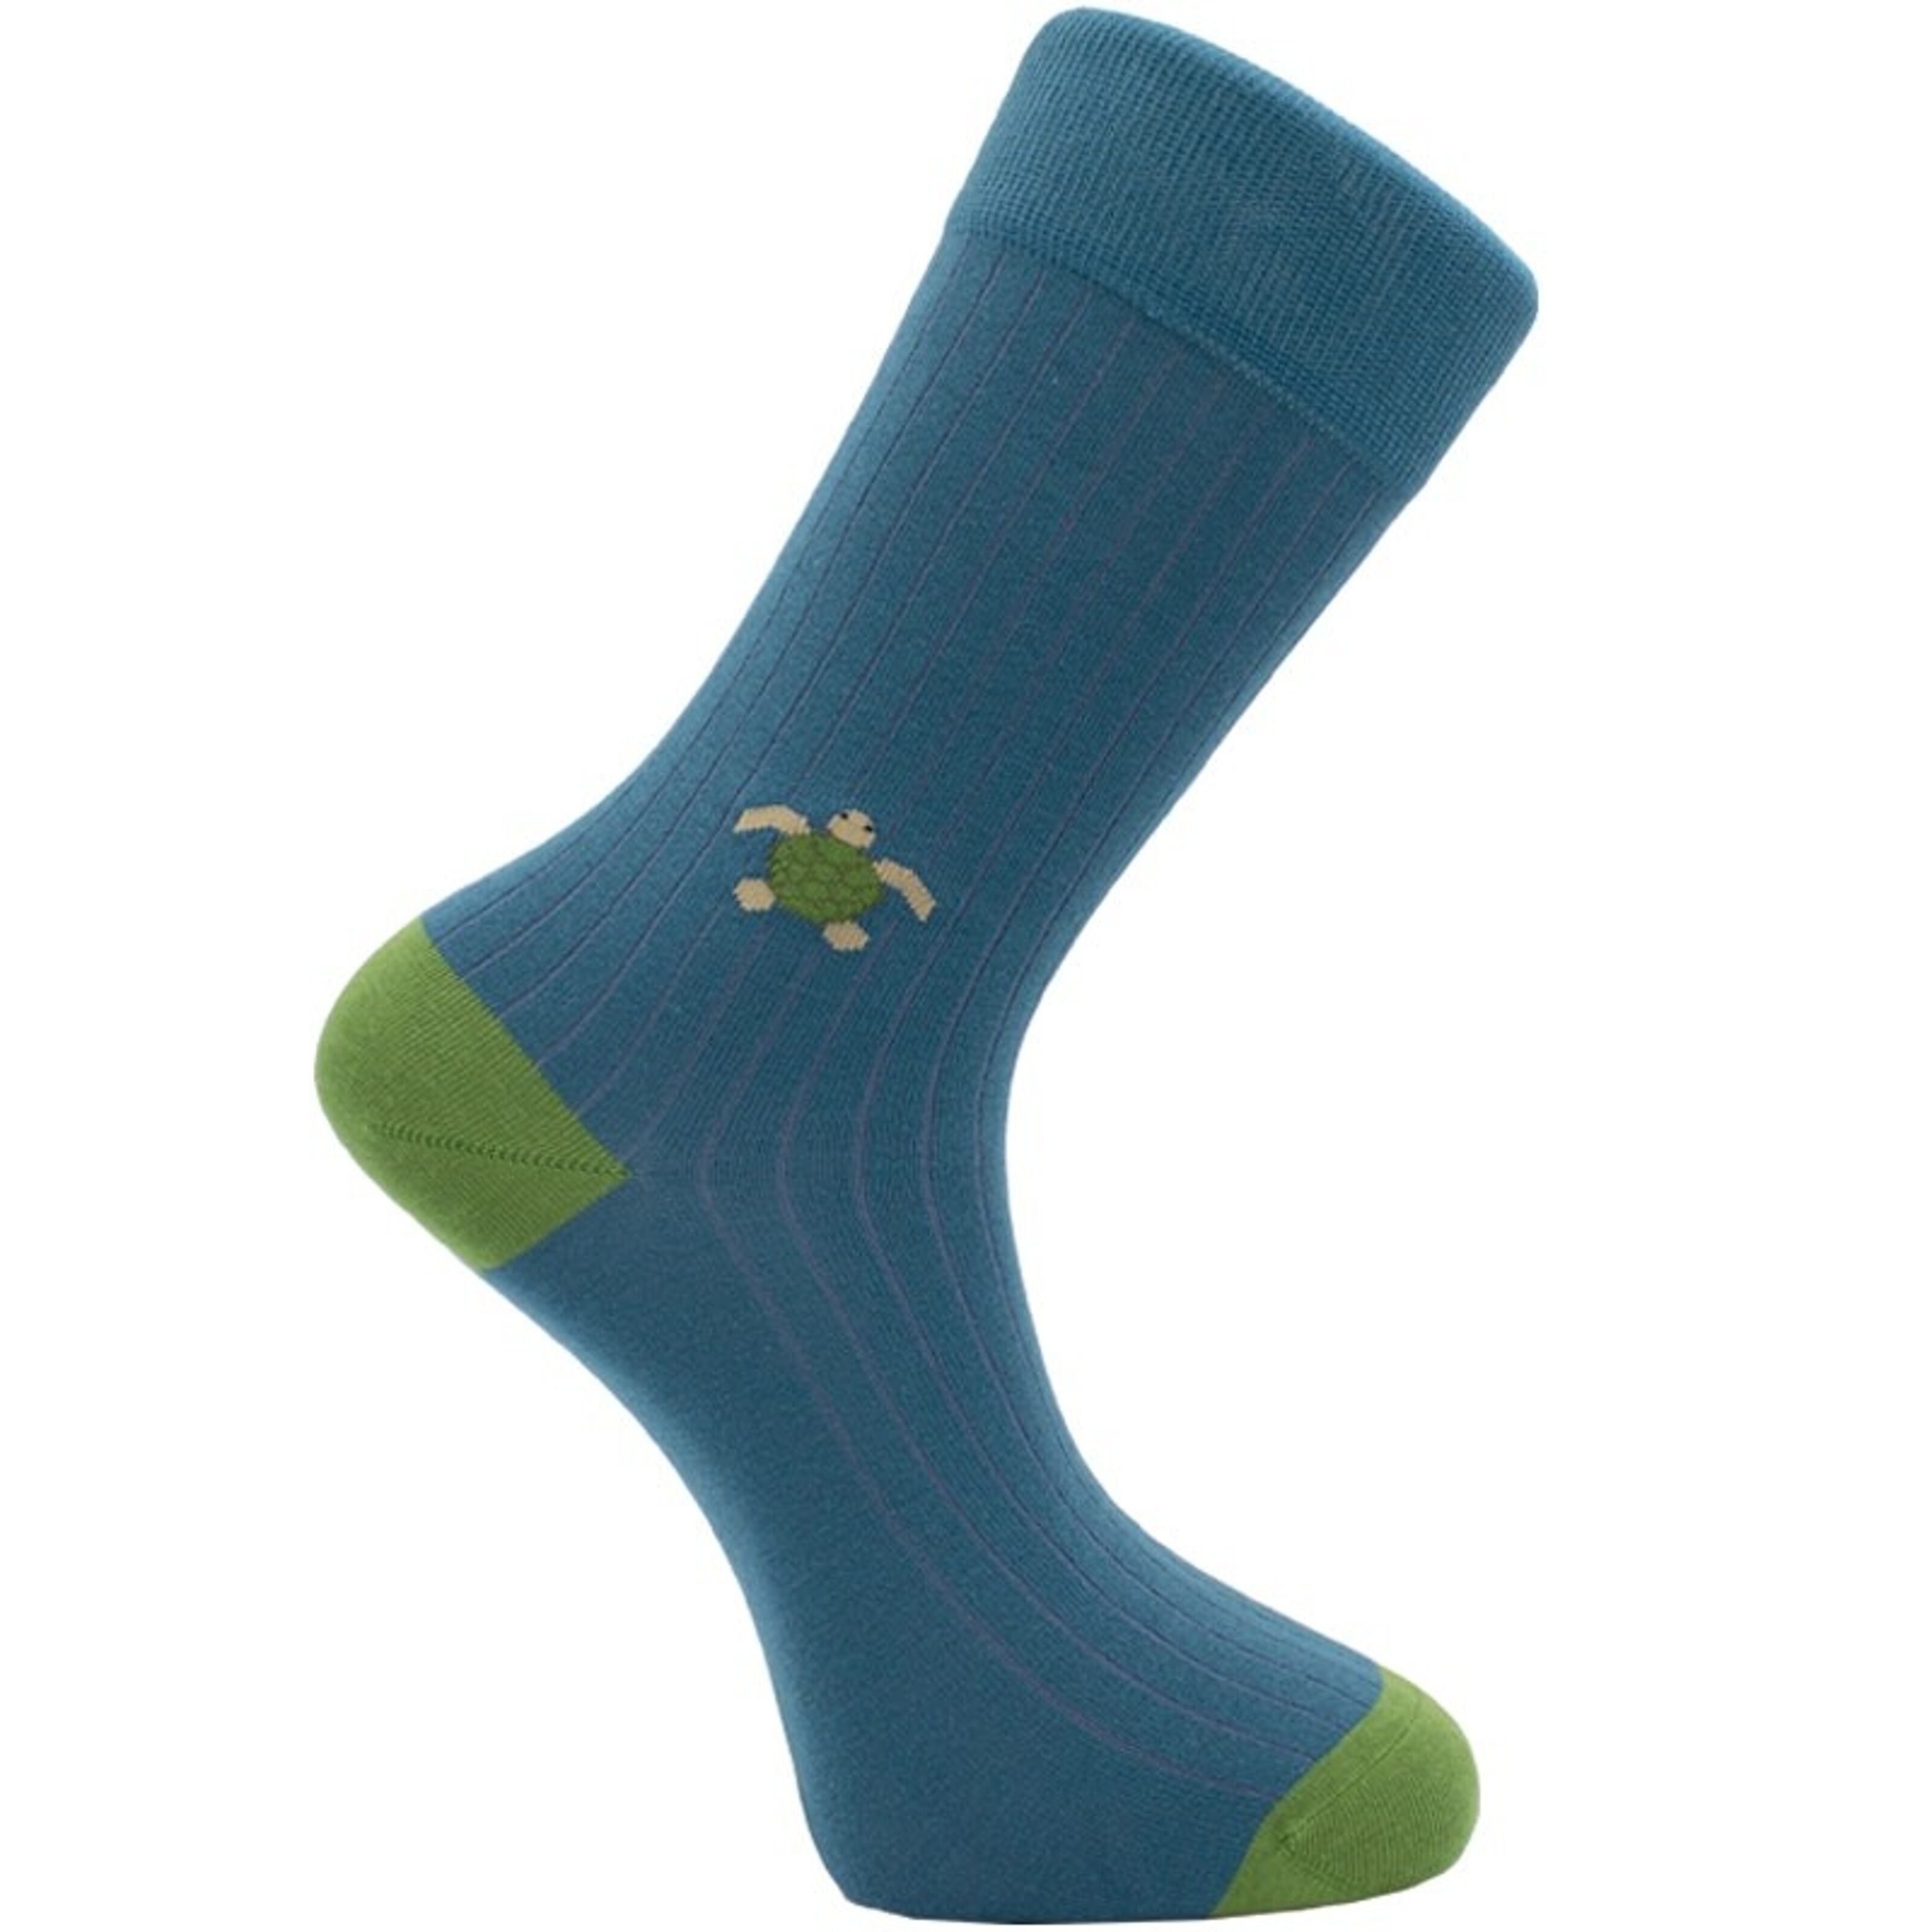 Kaufen Sie Schildkröte einfarbige Socken zu Großhandelspreisen